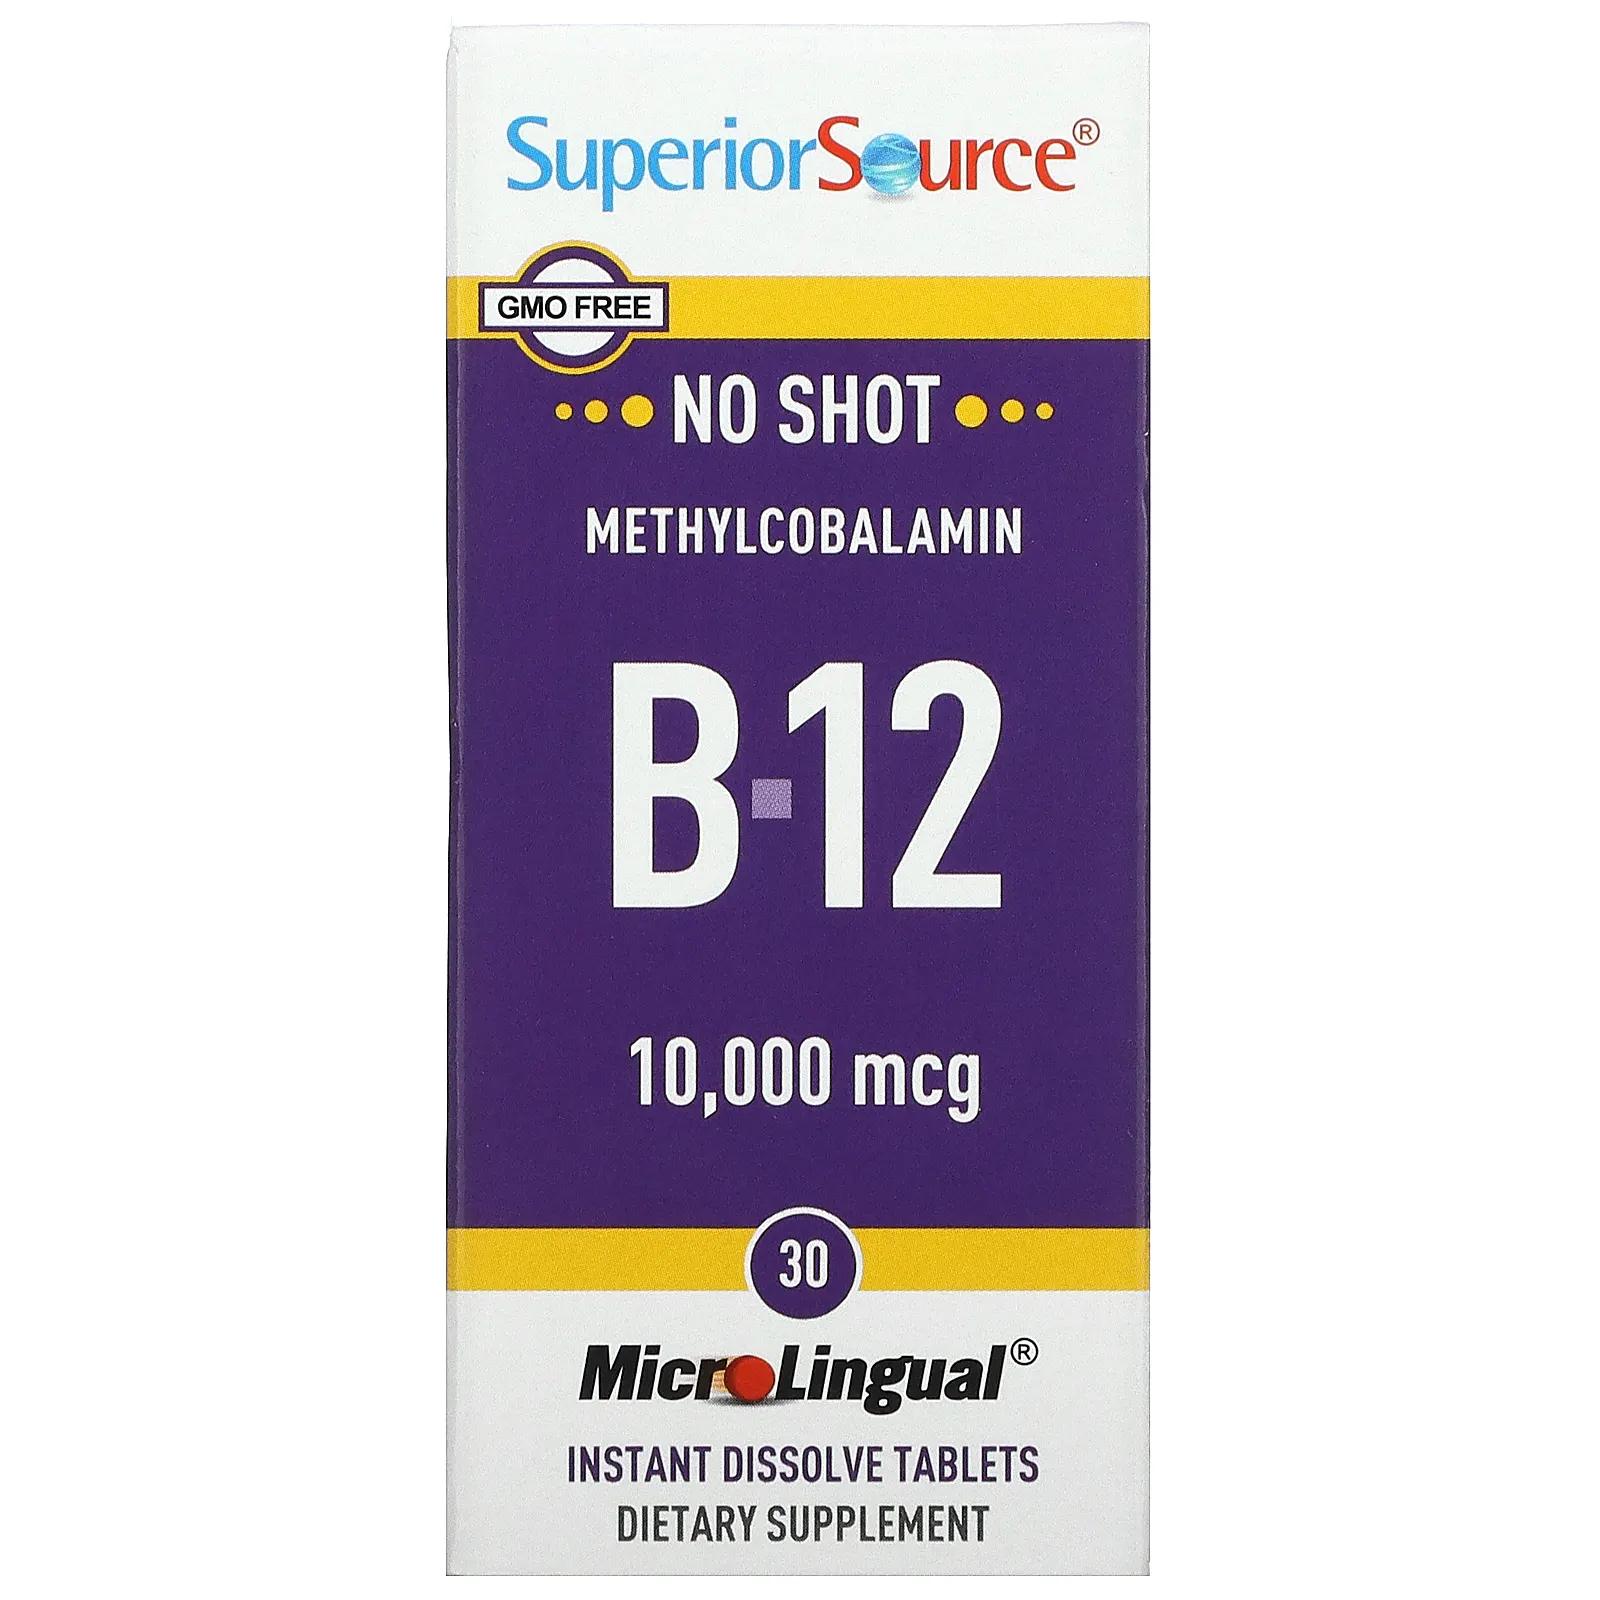 Superior Source Метилкобаламин B-12 10000 мкг 30 микролингвальных быстрорастворимых таблеток superior source метилкобаламин b 12 10000 мкг 30 микролингвальных быстрорастворимых таблеток